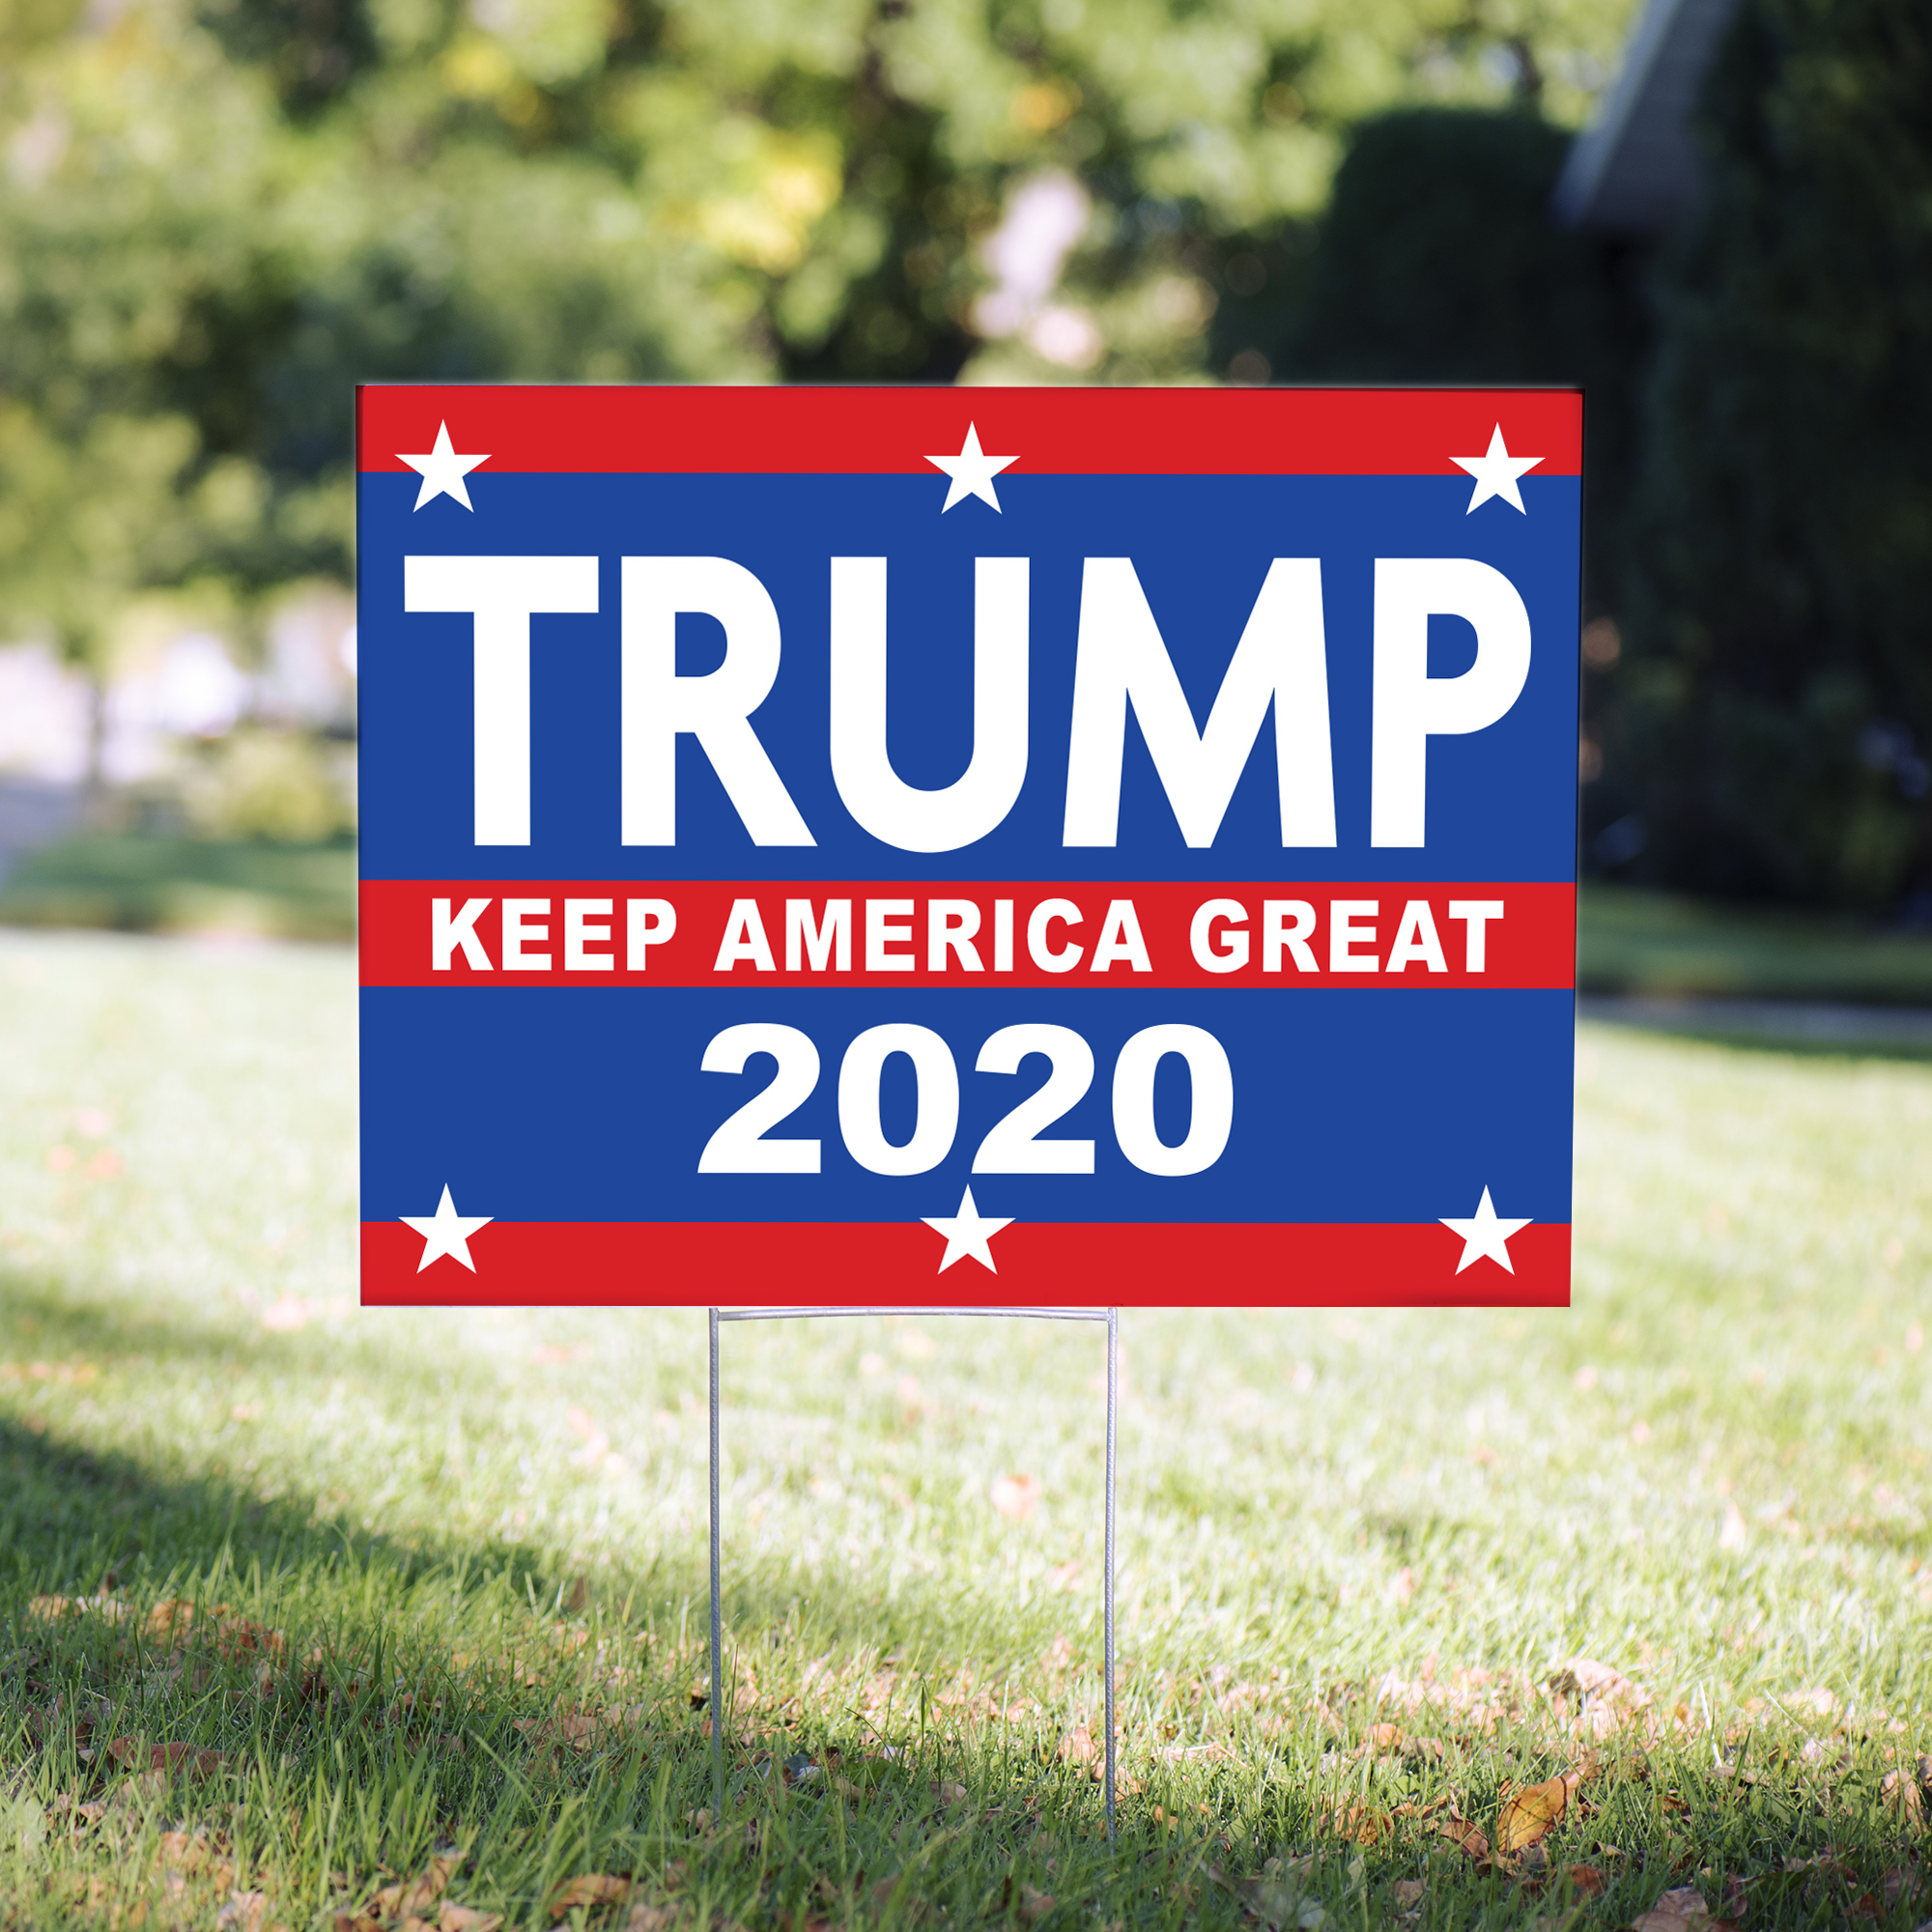 Trump Keep America Great 2020 Political Yard Sign - 24 x 18 inch